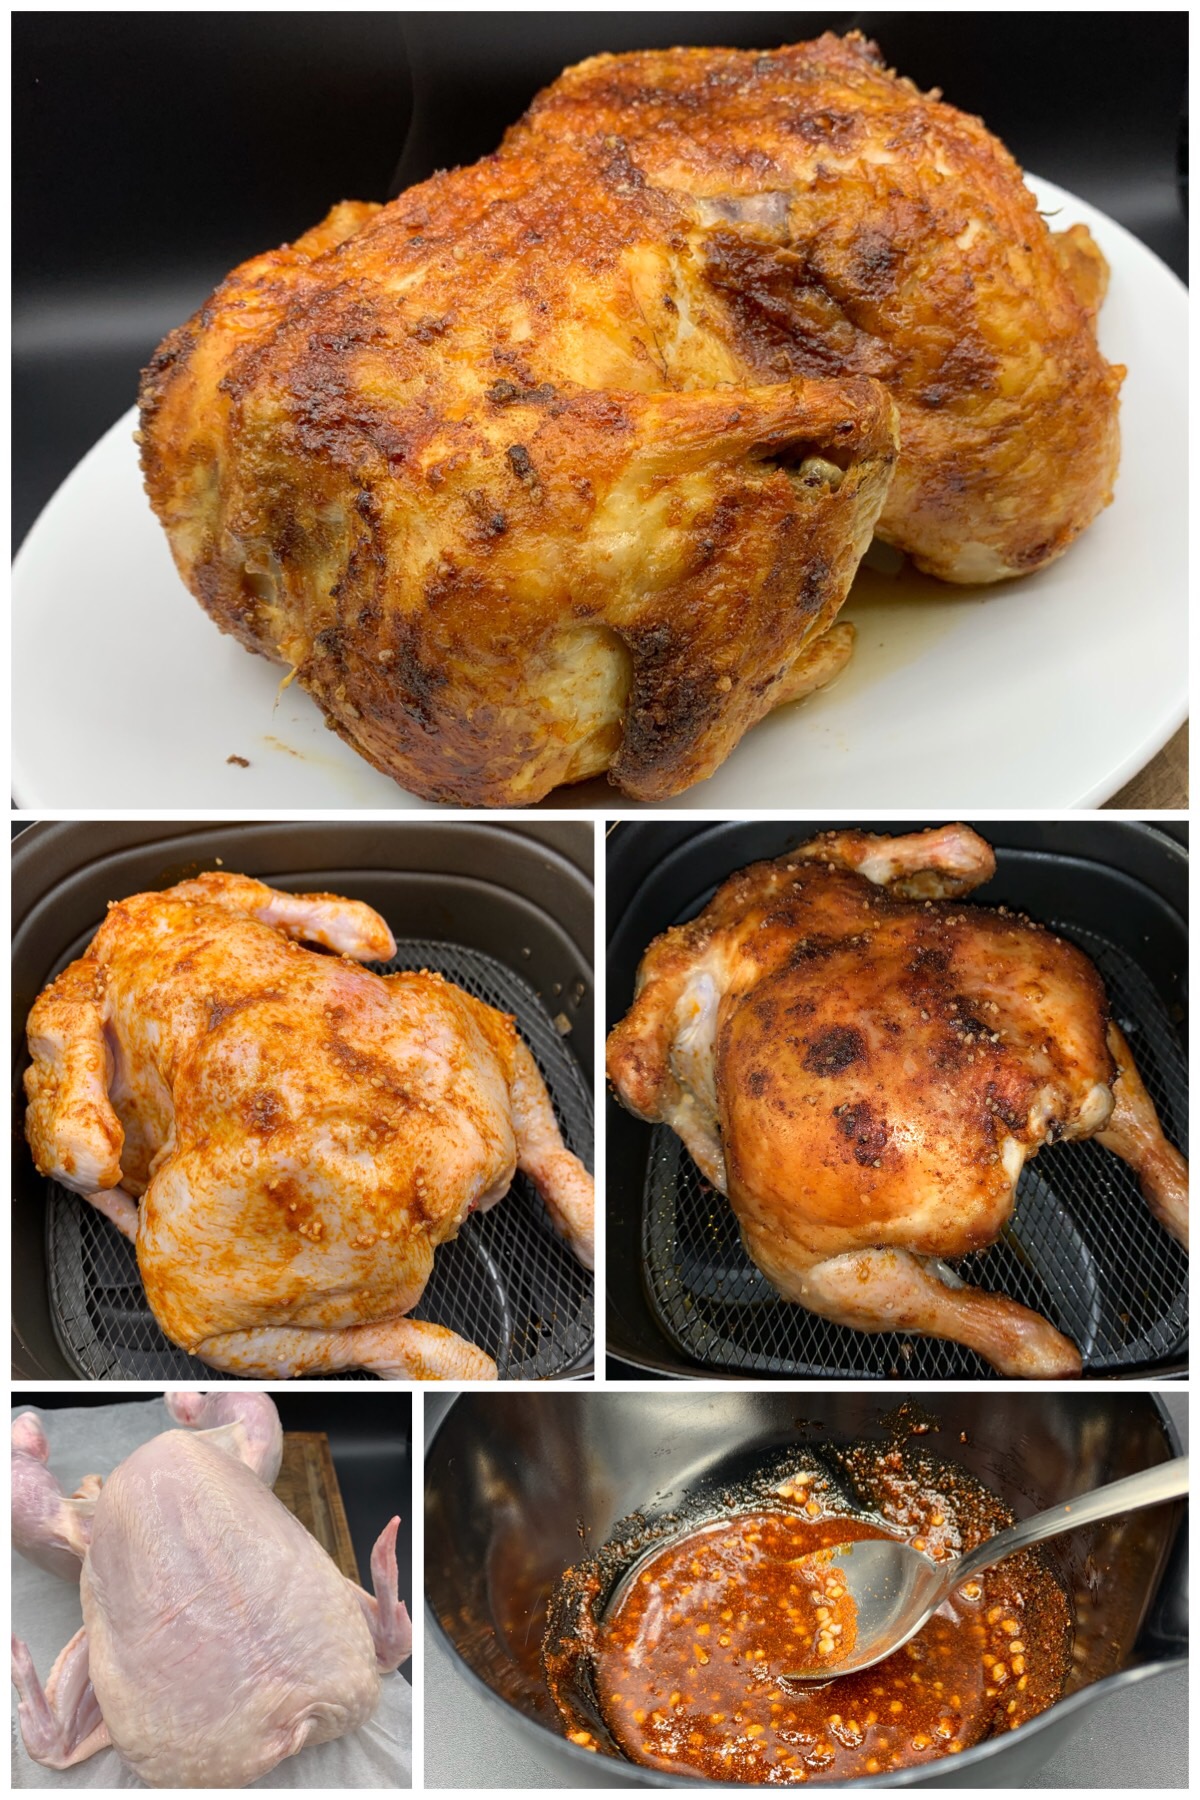 Helstegt kylling med grillede rodfrugter